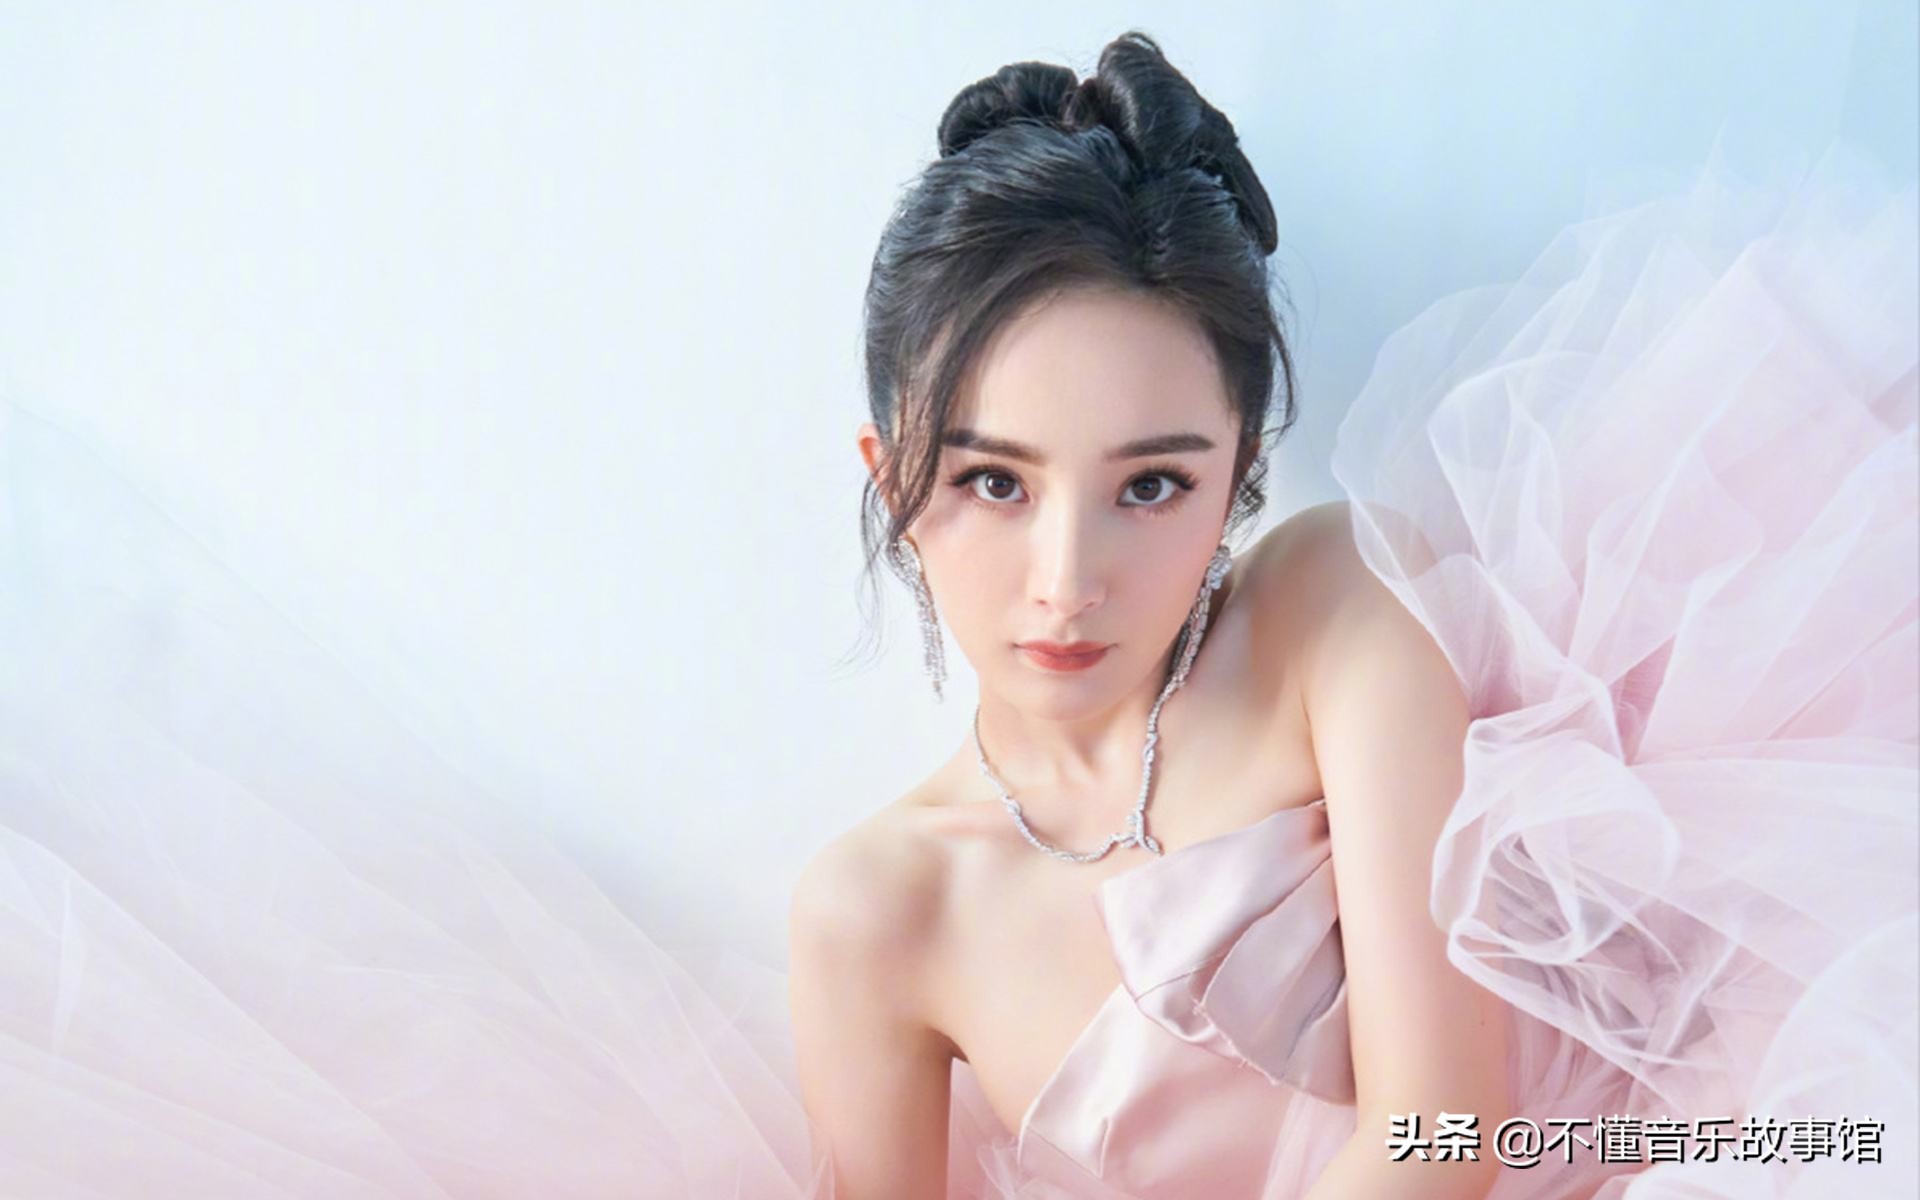 中国十大傲人身材的美女明星你觉得谁更漂亮